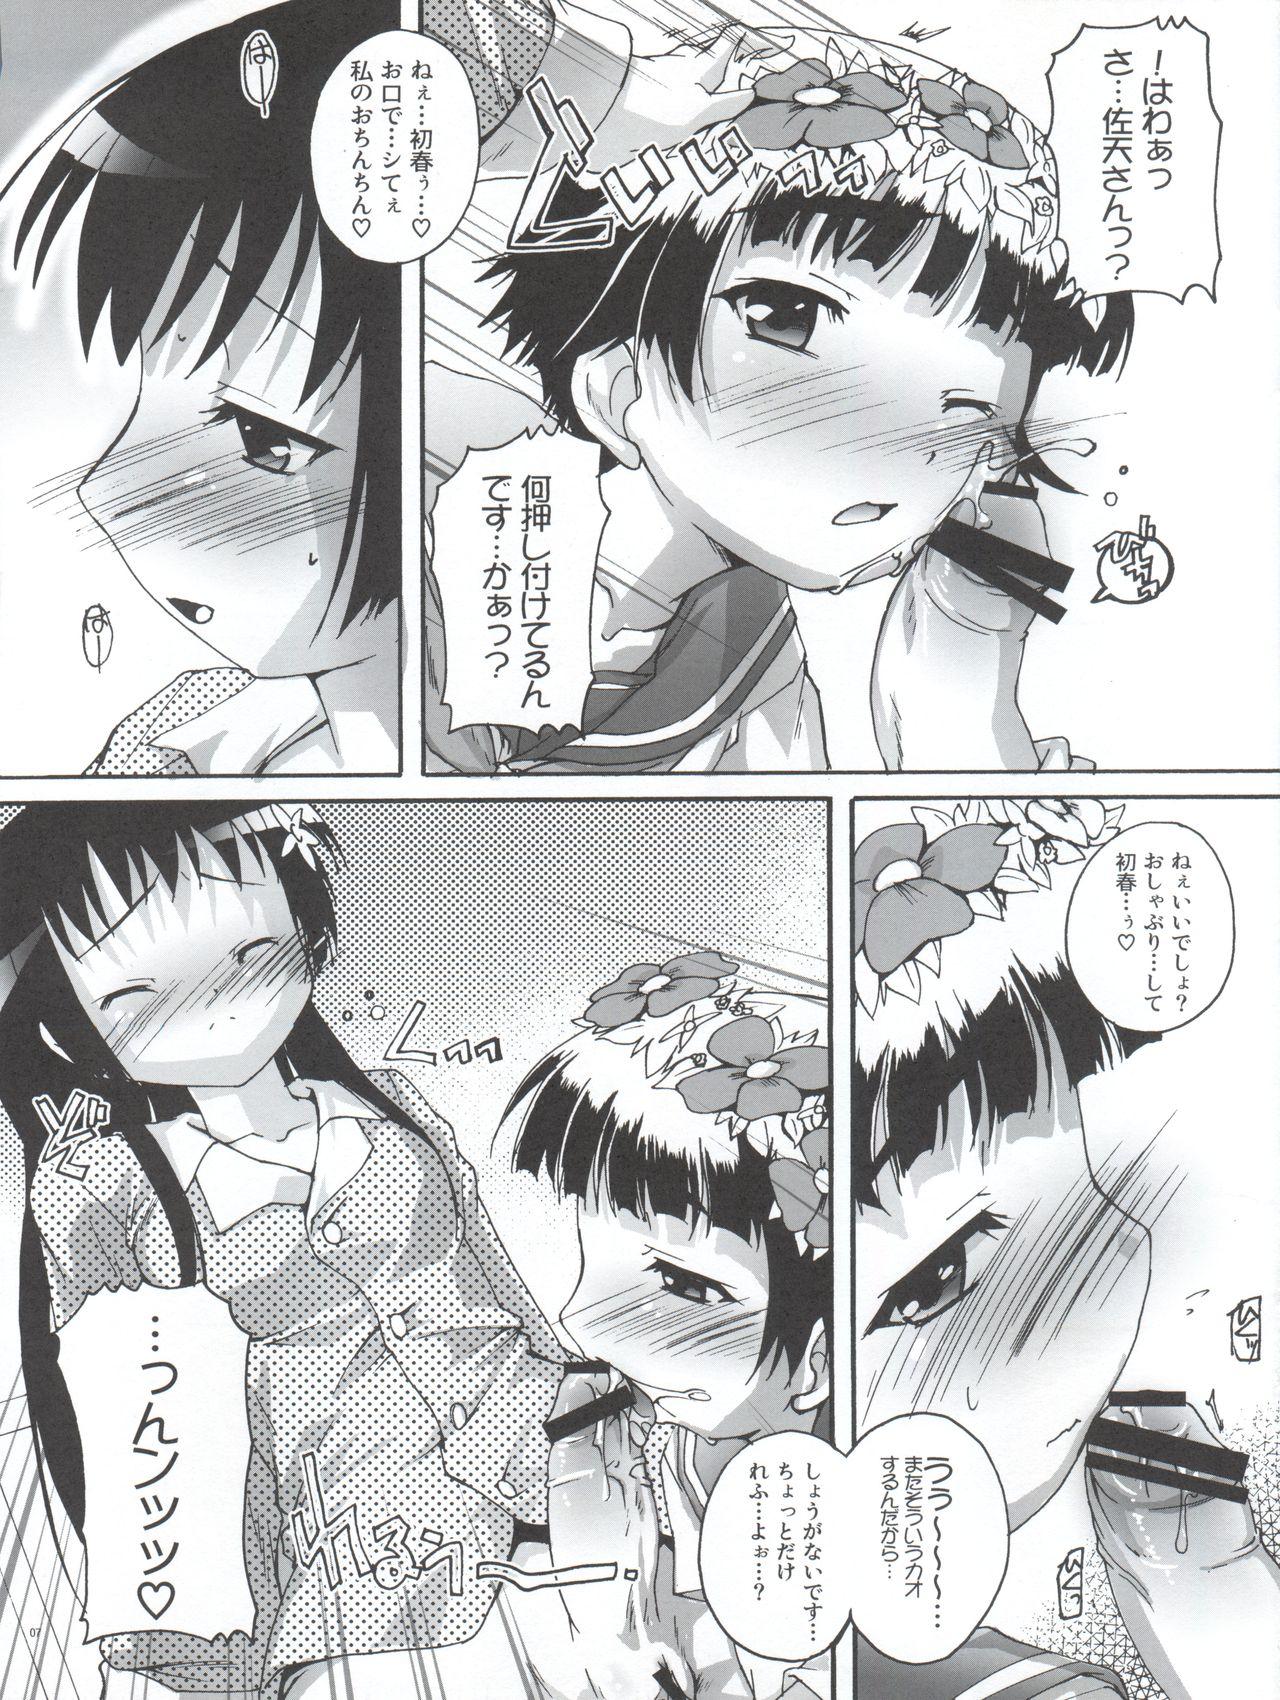 Female Domination Kanzen Nenshou 18 Judgment no Oshigoto desu no! - Toaru kagaku no railgun Milfporn - Page 7